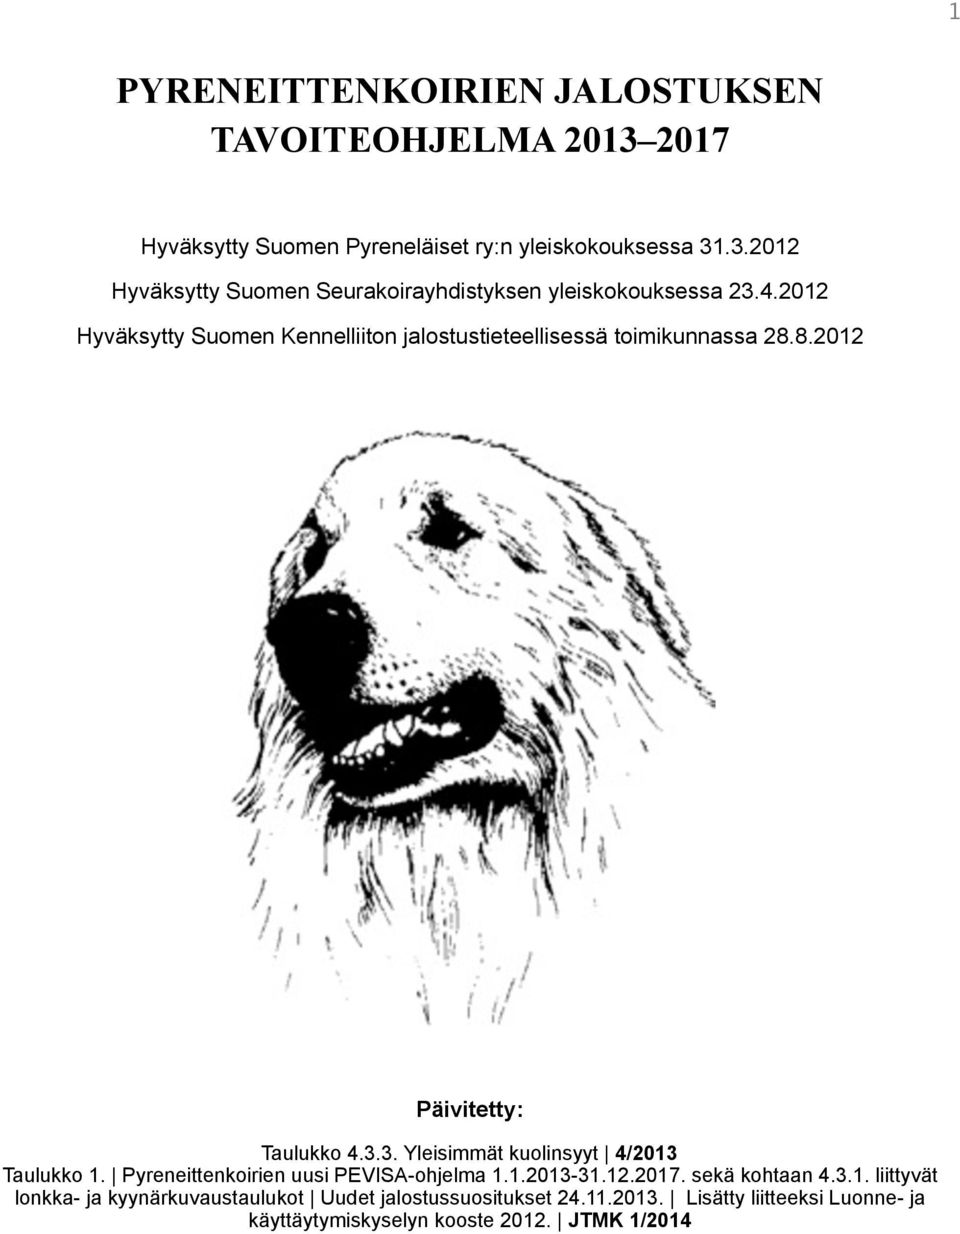 3. Yleisimmät kuolinsyyt 4/2013 Taulukko 1. Pyreneittenkoirien uusi PEVISA-ohjelma 1.1.2013-31.12.2017. sekä kohtaan 4.3.1. liittyvät lonkka- ja kyynärkuvaustaulukot Uudet jalostussuositukset 24.